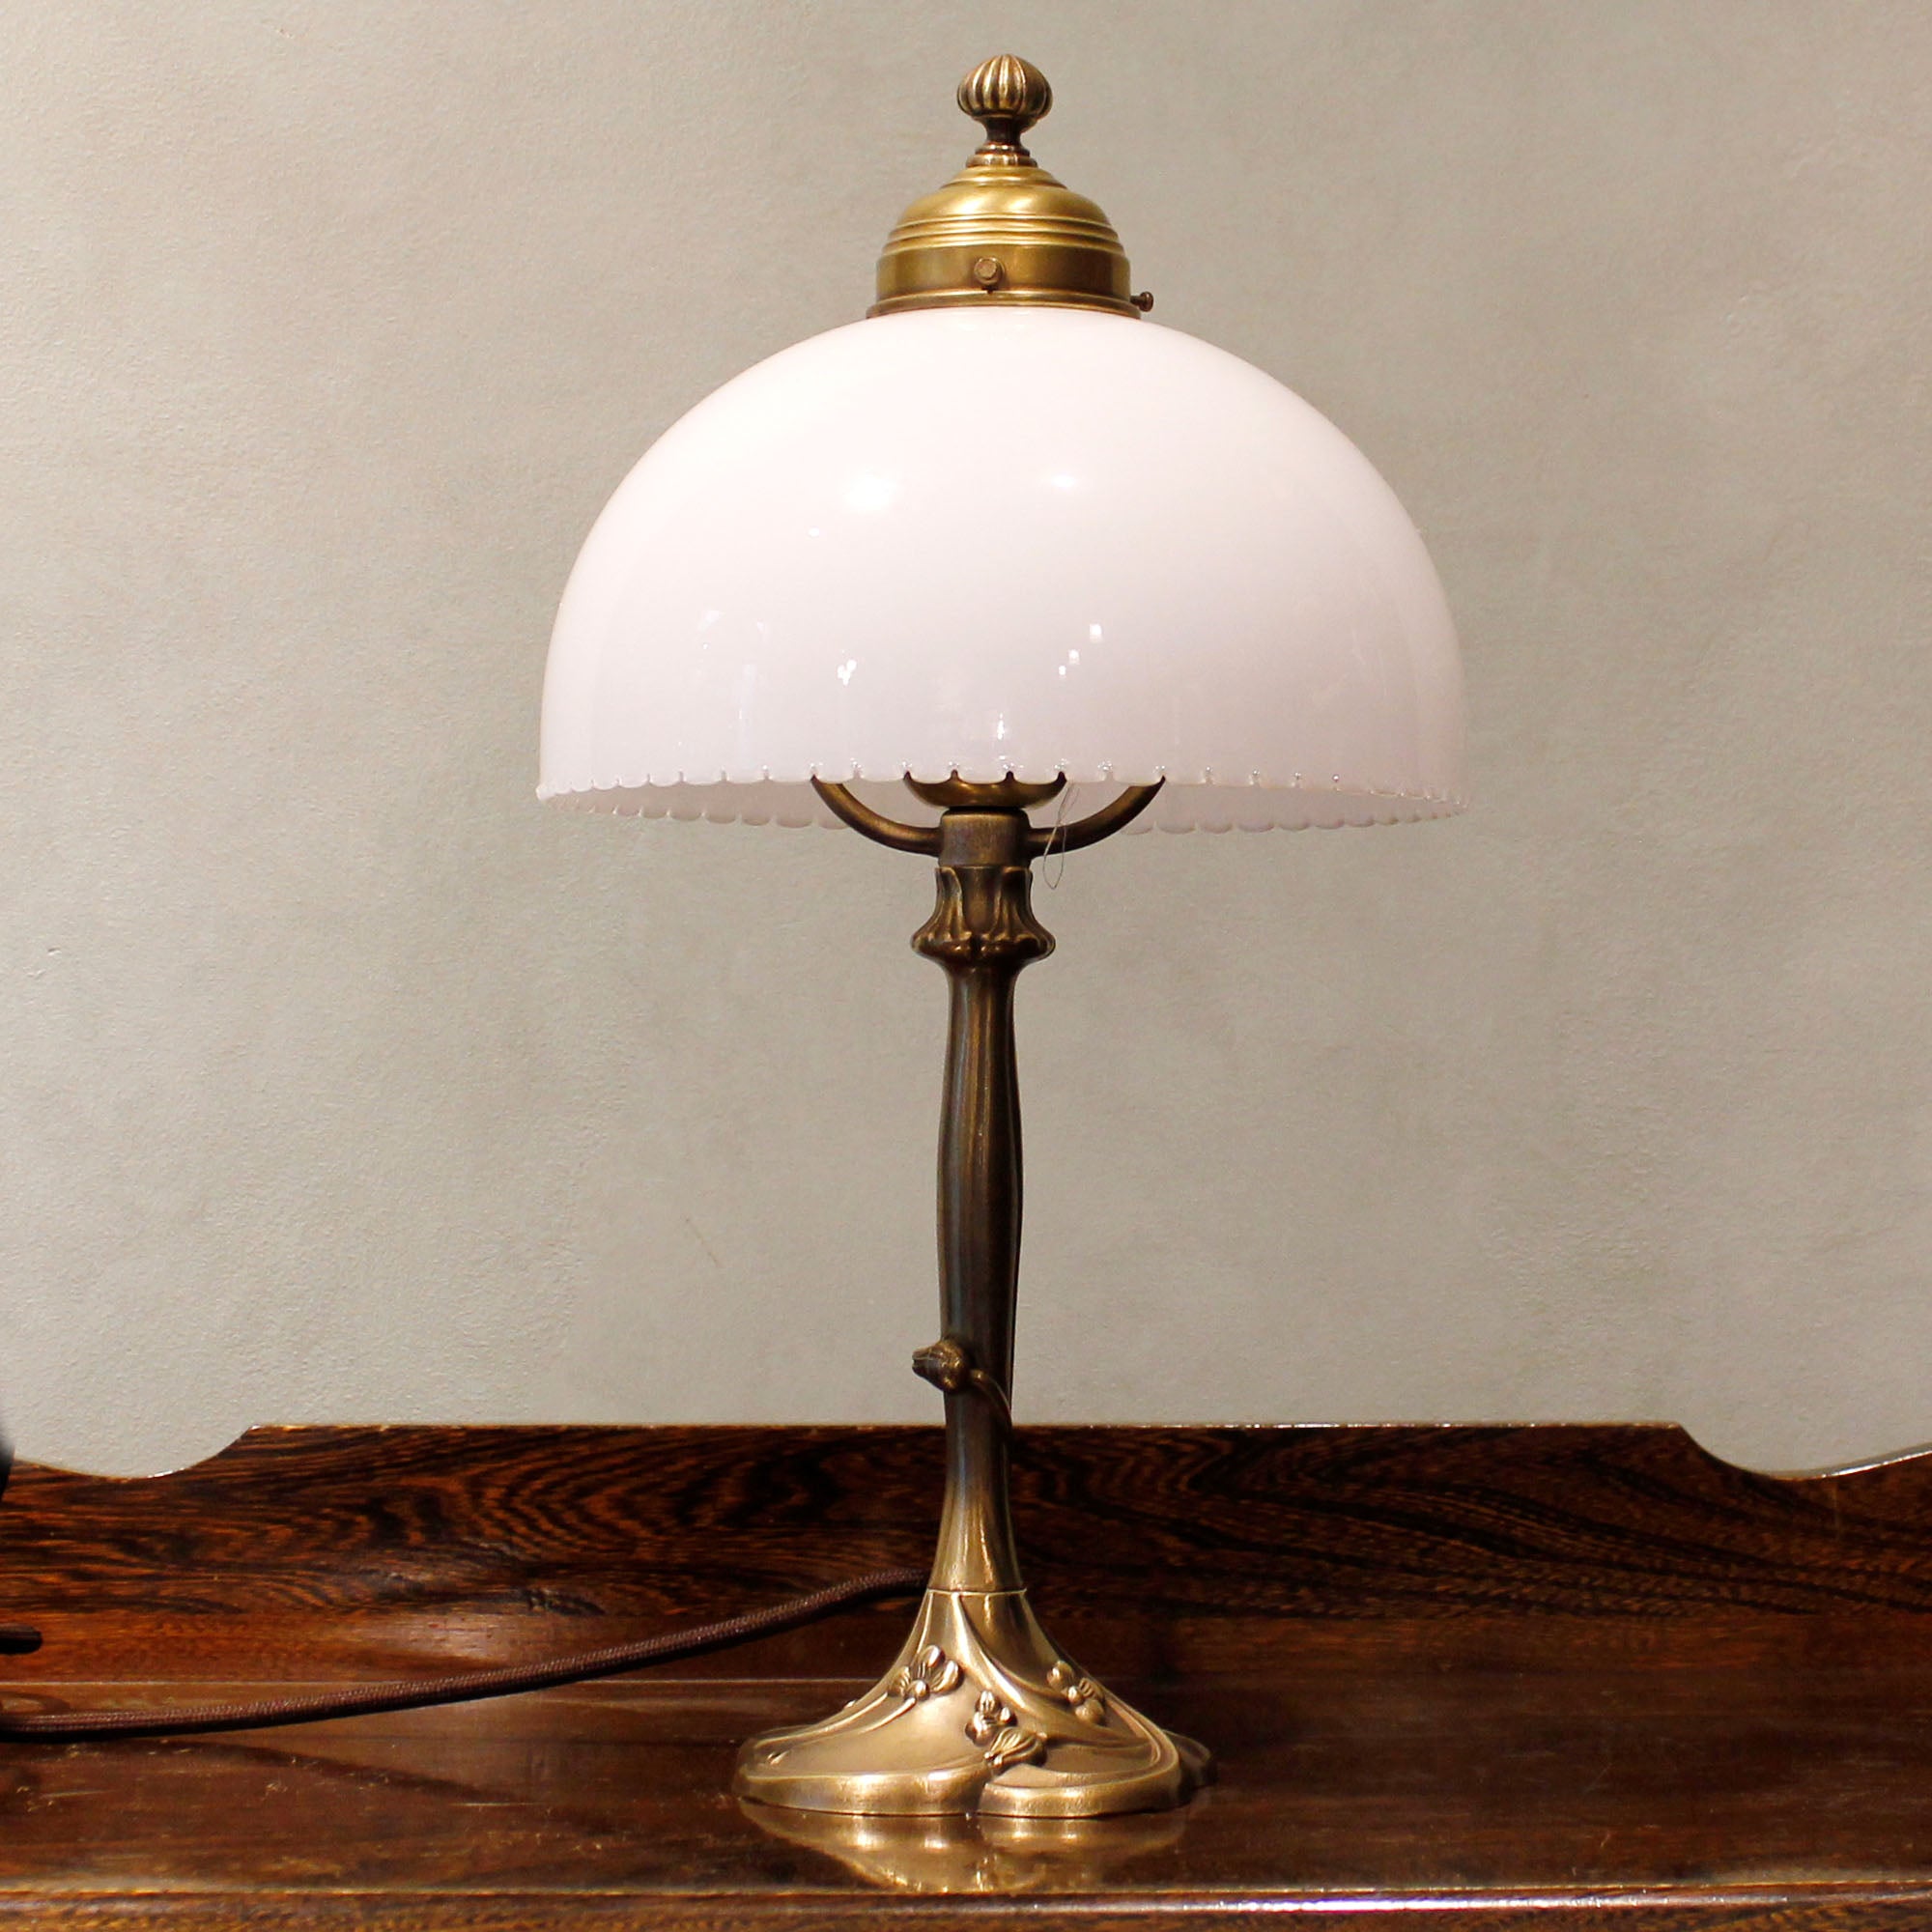 Art Nouveau Table Lamp "Nuance"